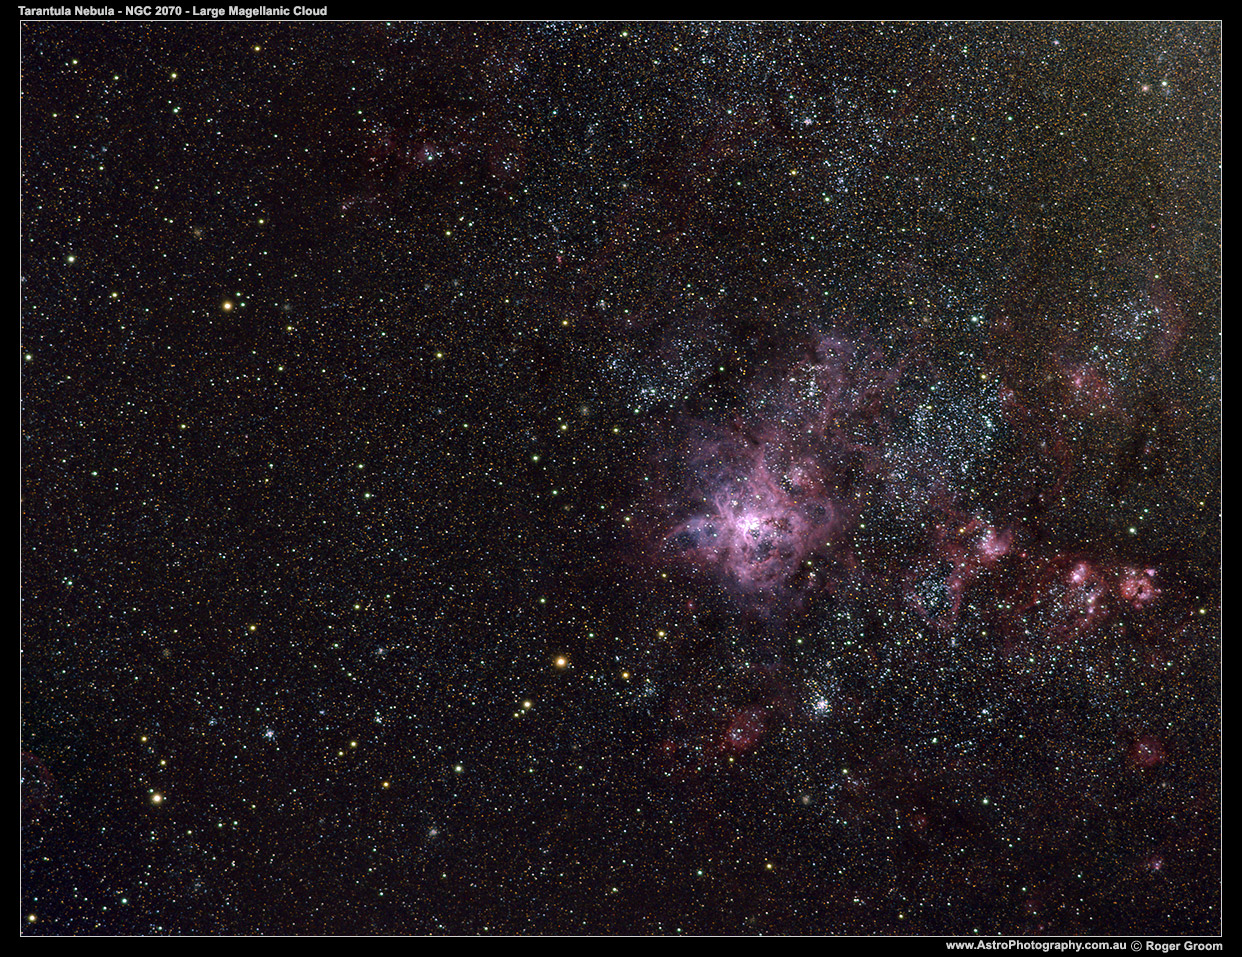 NGC 2070 Tarantula Nebula in the Large Magellanic Cloud